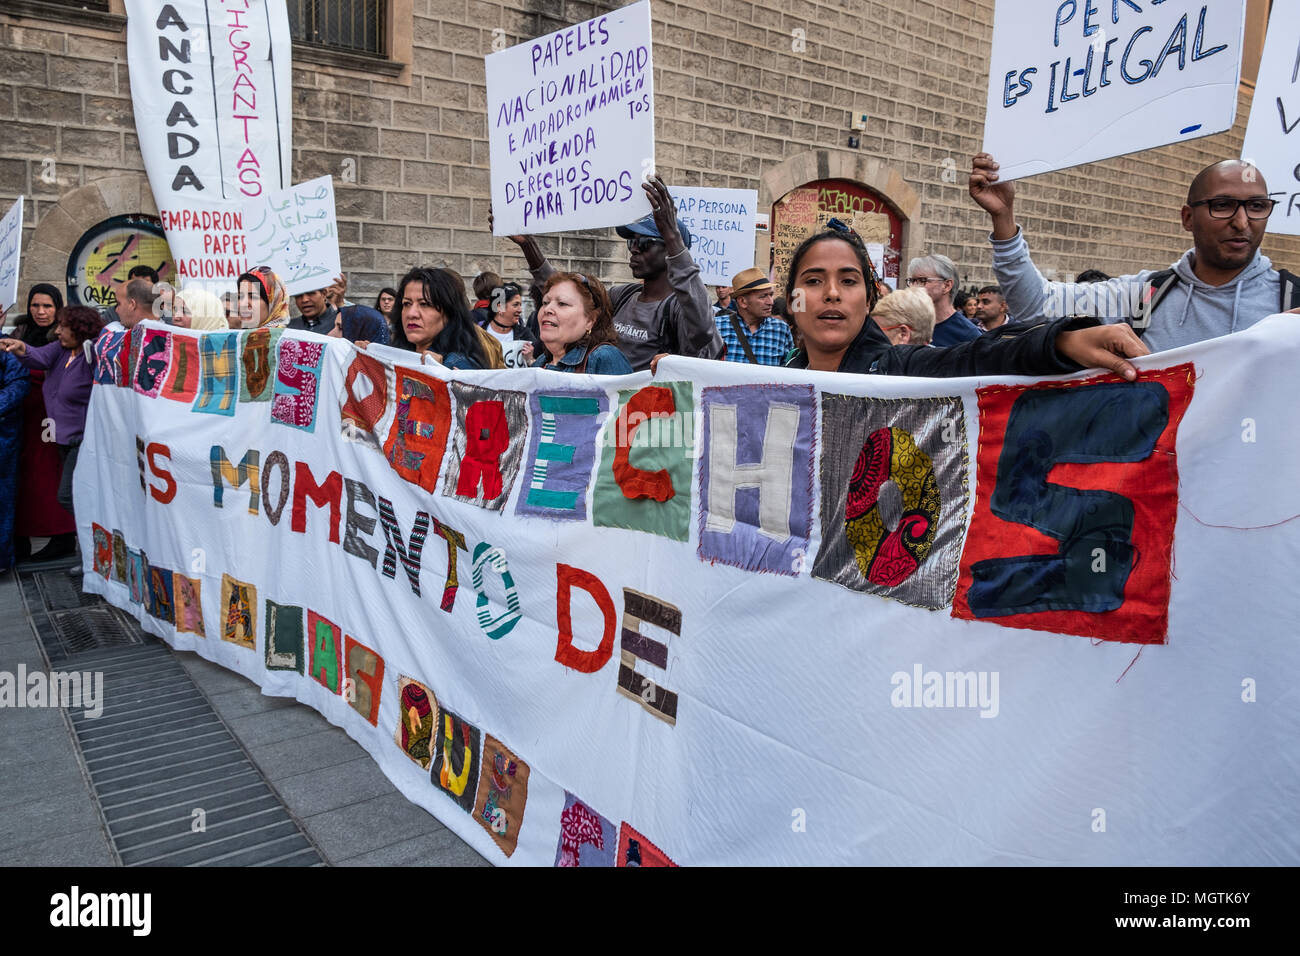 Barcelona, España. 28 abr, 2018. Una pancarta hecha a mano con trozos de ropa visto con el texto "Exigimos derechos, es tiempo para cuidar a quienes cuidan'. Durante los últimos siete